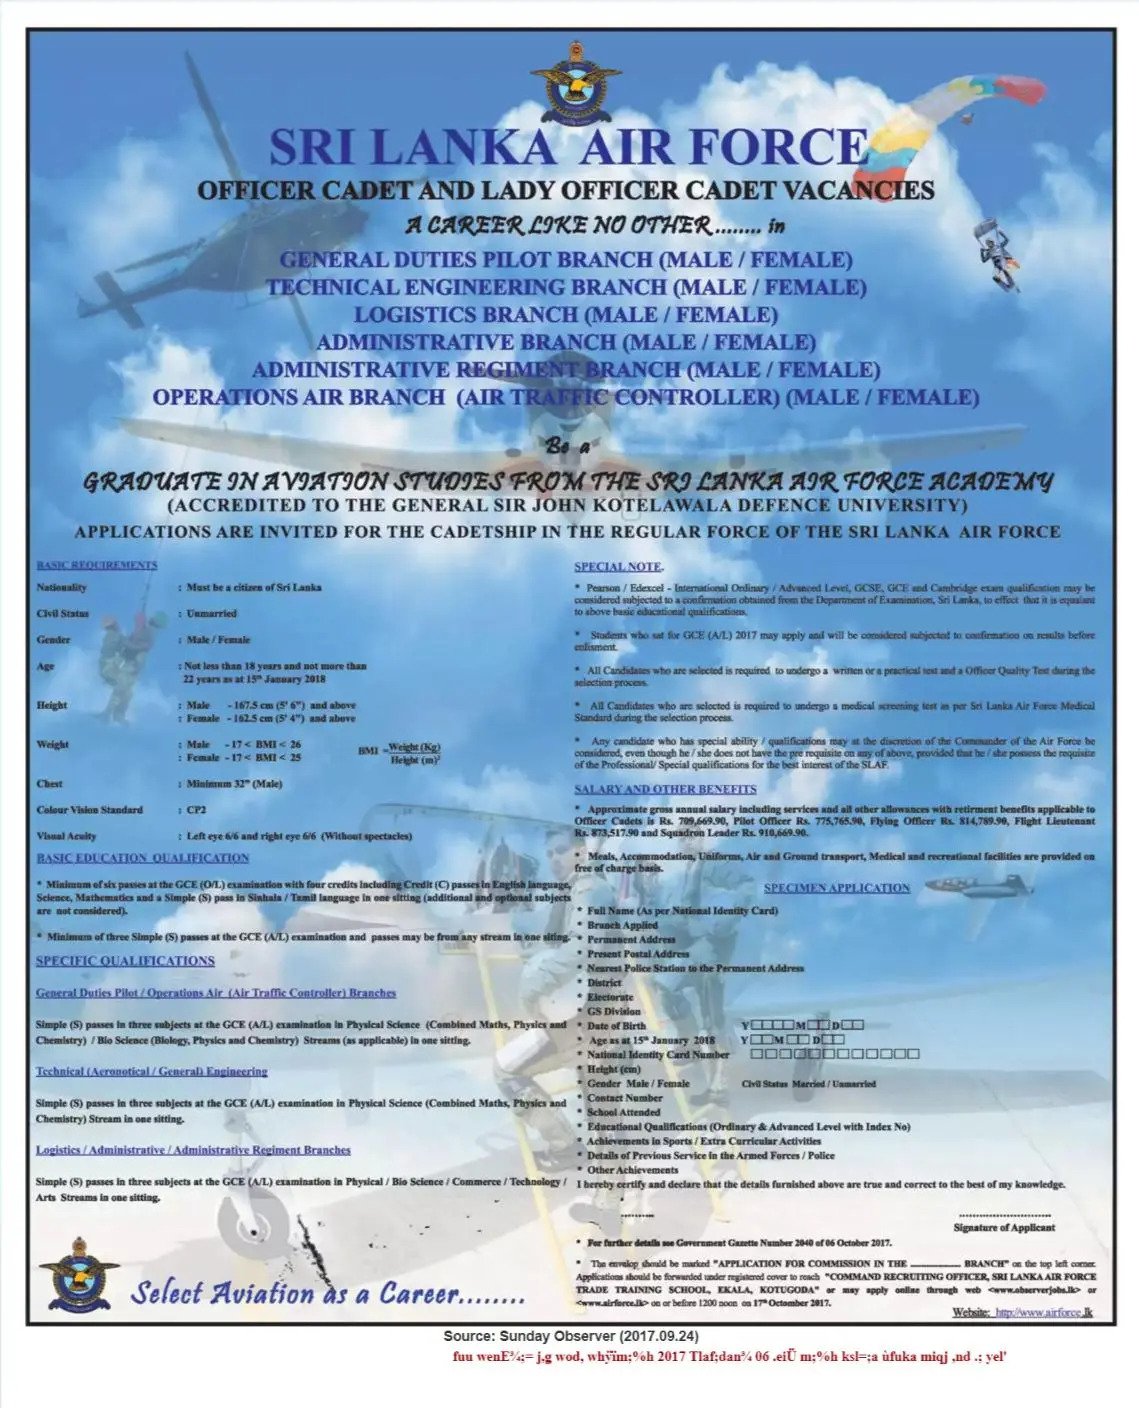 Officer Cadet & Lady Officer Cadet Vacancies in Sri Lanka Air Force